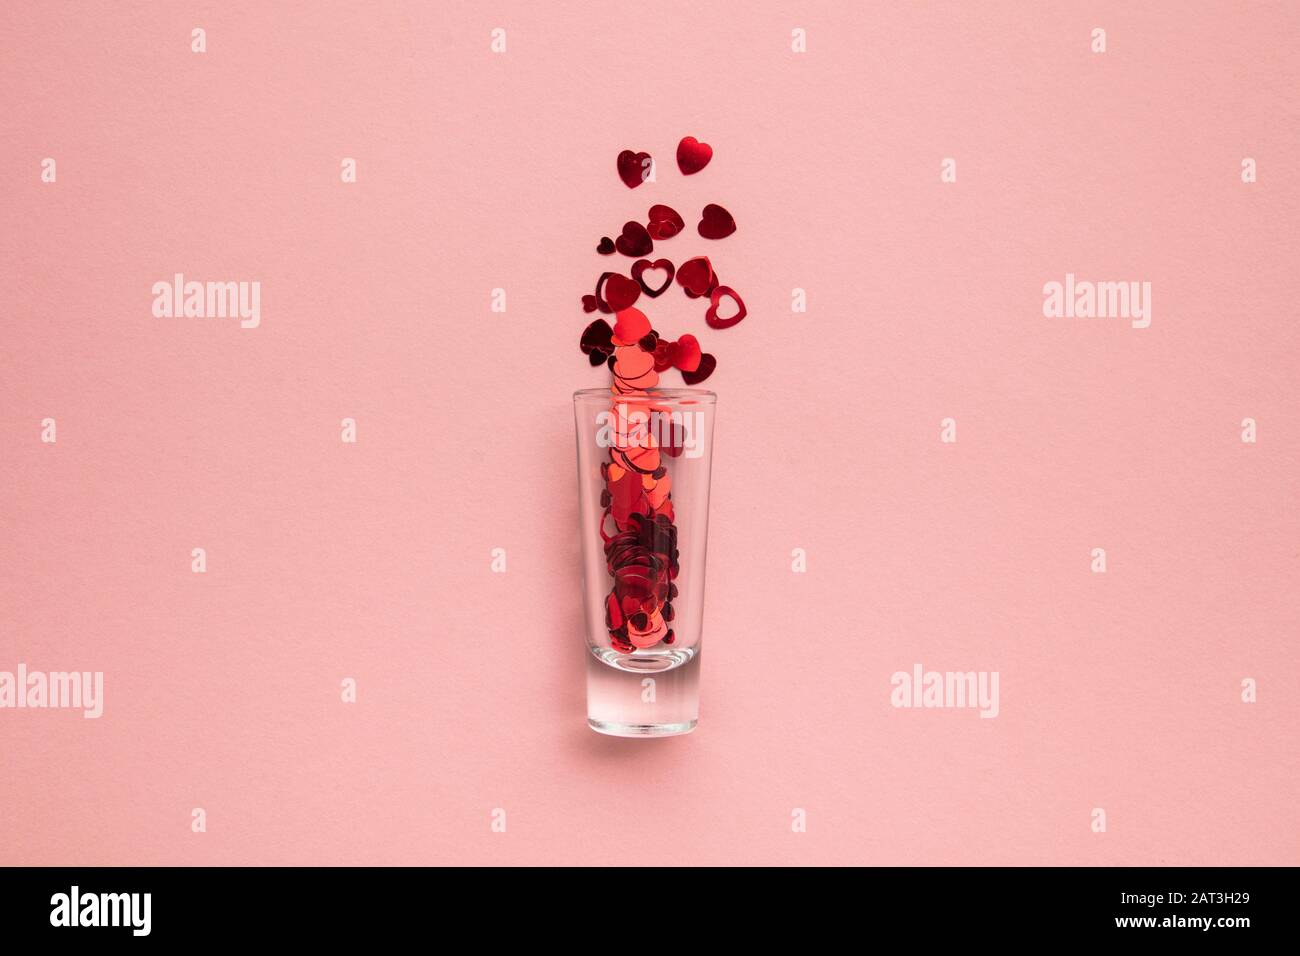 Valentinstagsaufnahmen. Glas mit Herzkonfetti auf pastellrosa Hintergrund Stockfoto